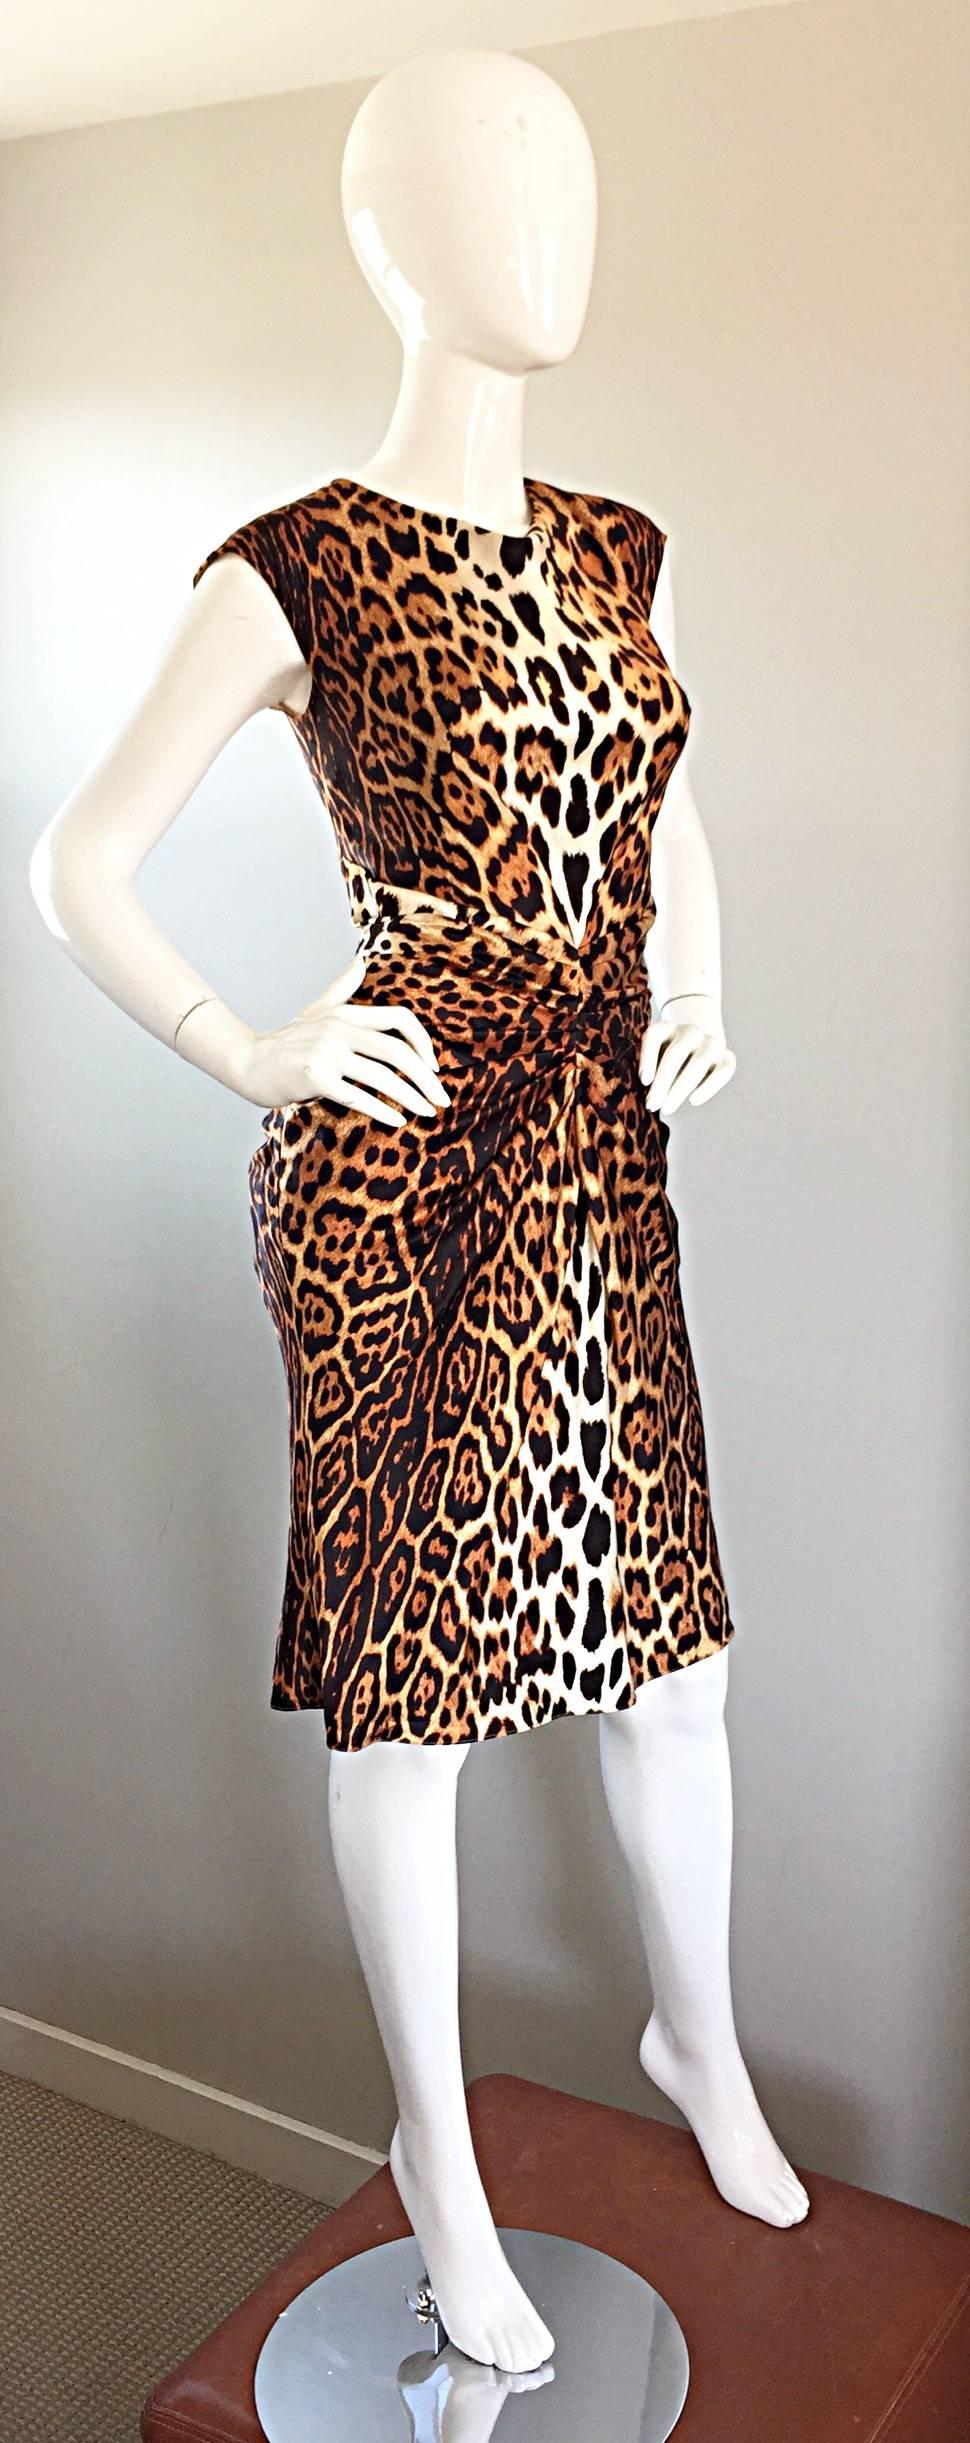 christian dior cheetah dress